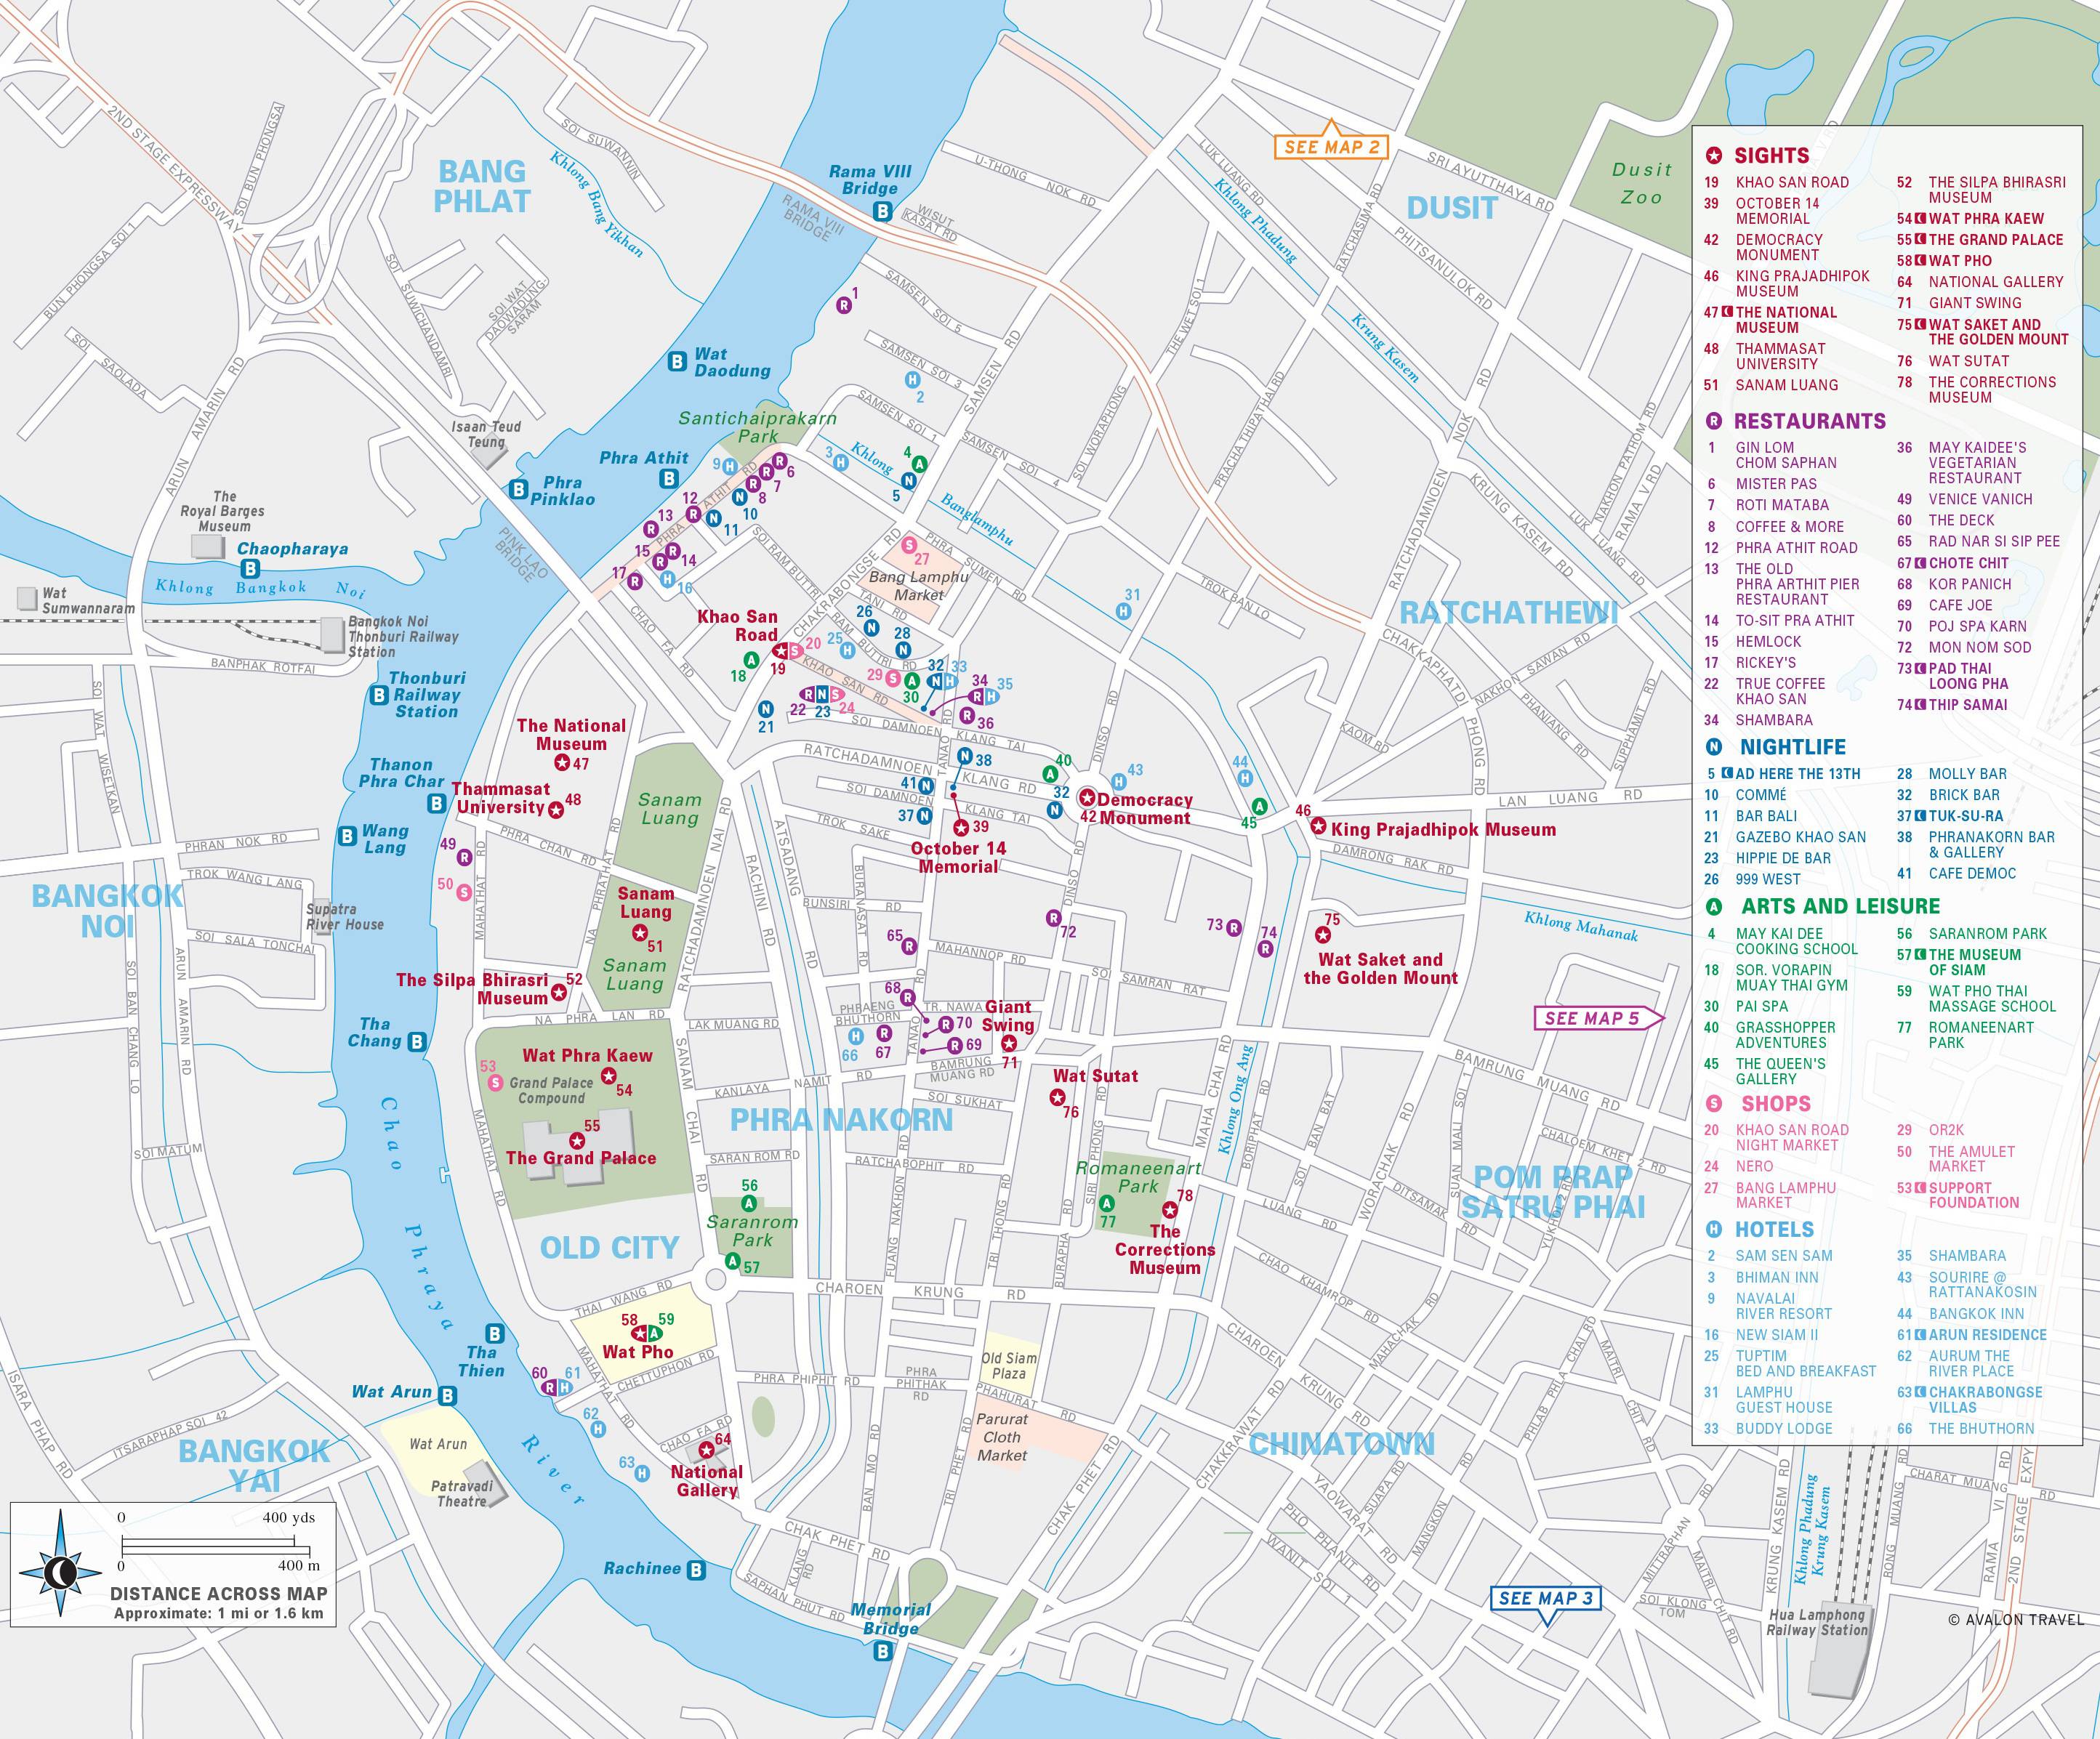 Карта бангкок банка. Достопримечательности Бангкока на карте. Бангкок план города. Туристическая карта Бангкока. Карта достопримечательностей Бангкока на русском.